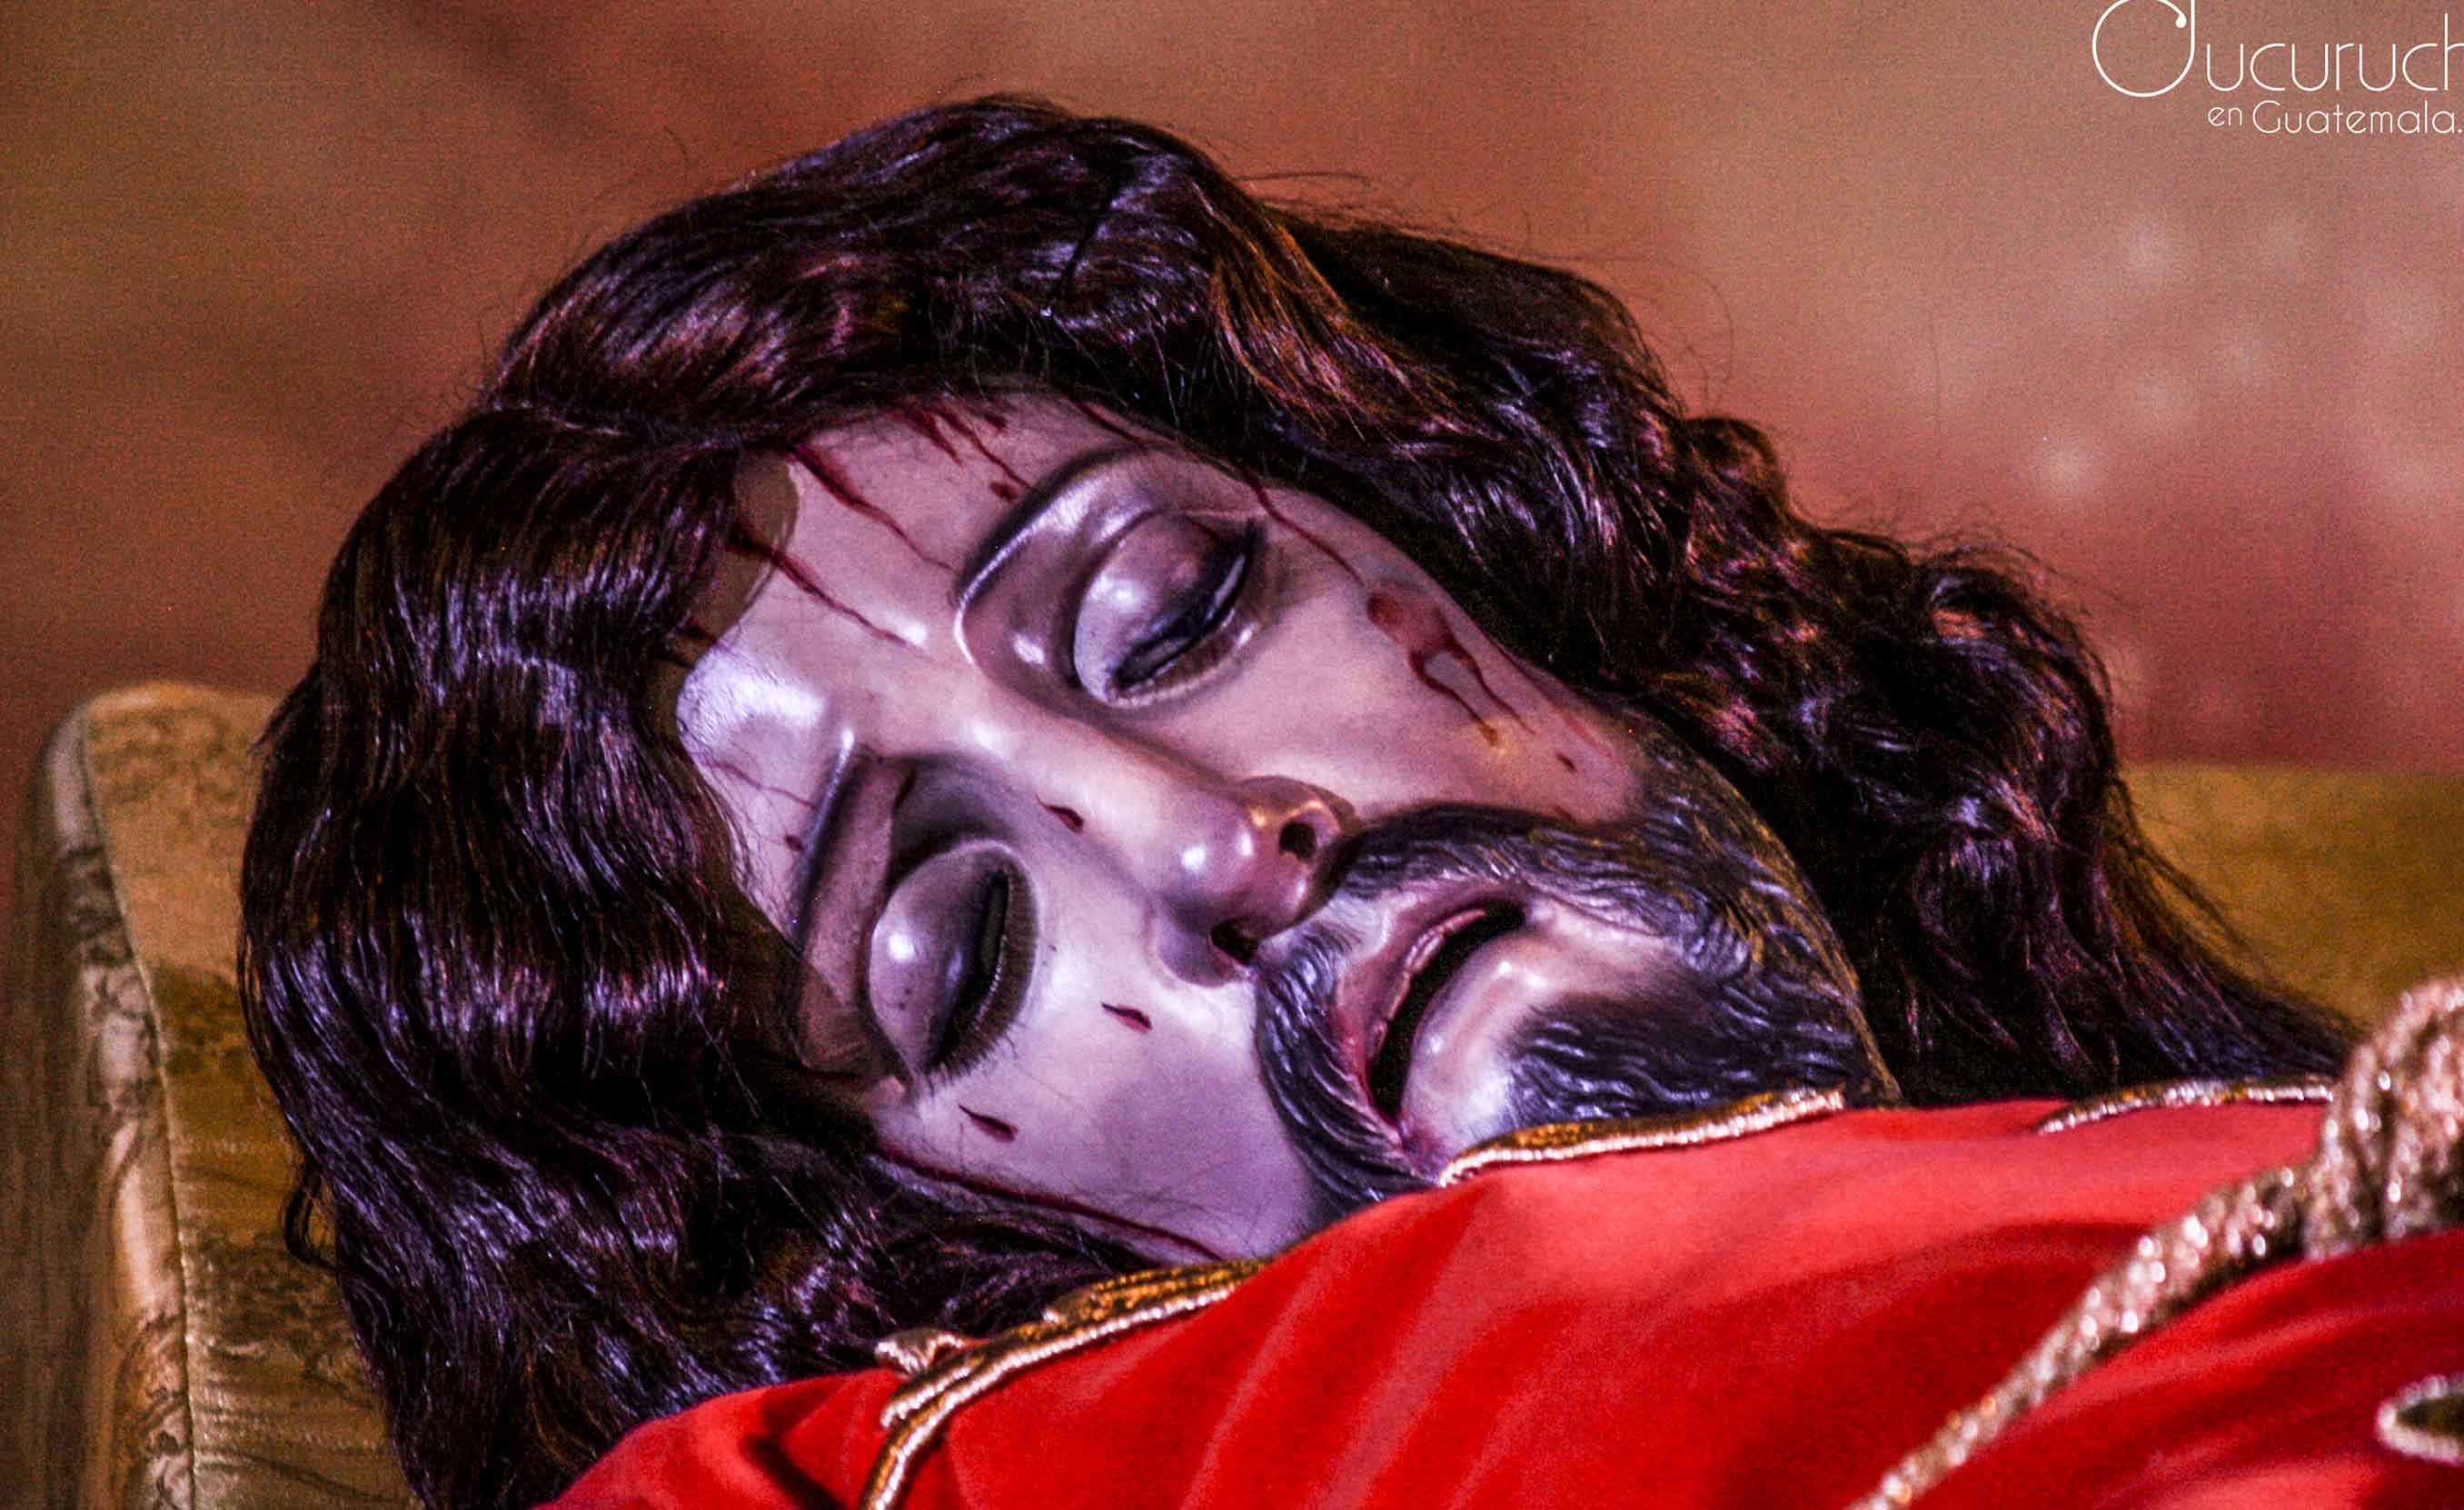 ¡Advenimiento y Bendición del Señor Sepultado de San Bartolomé, Quetzaltenango!